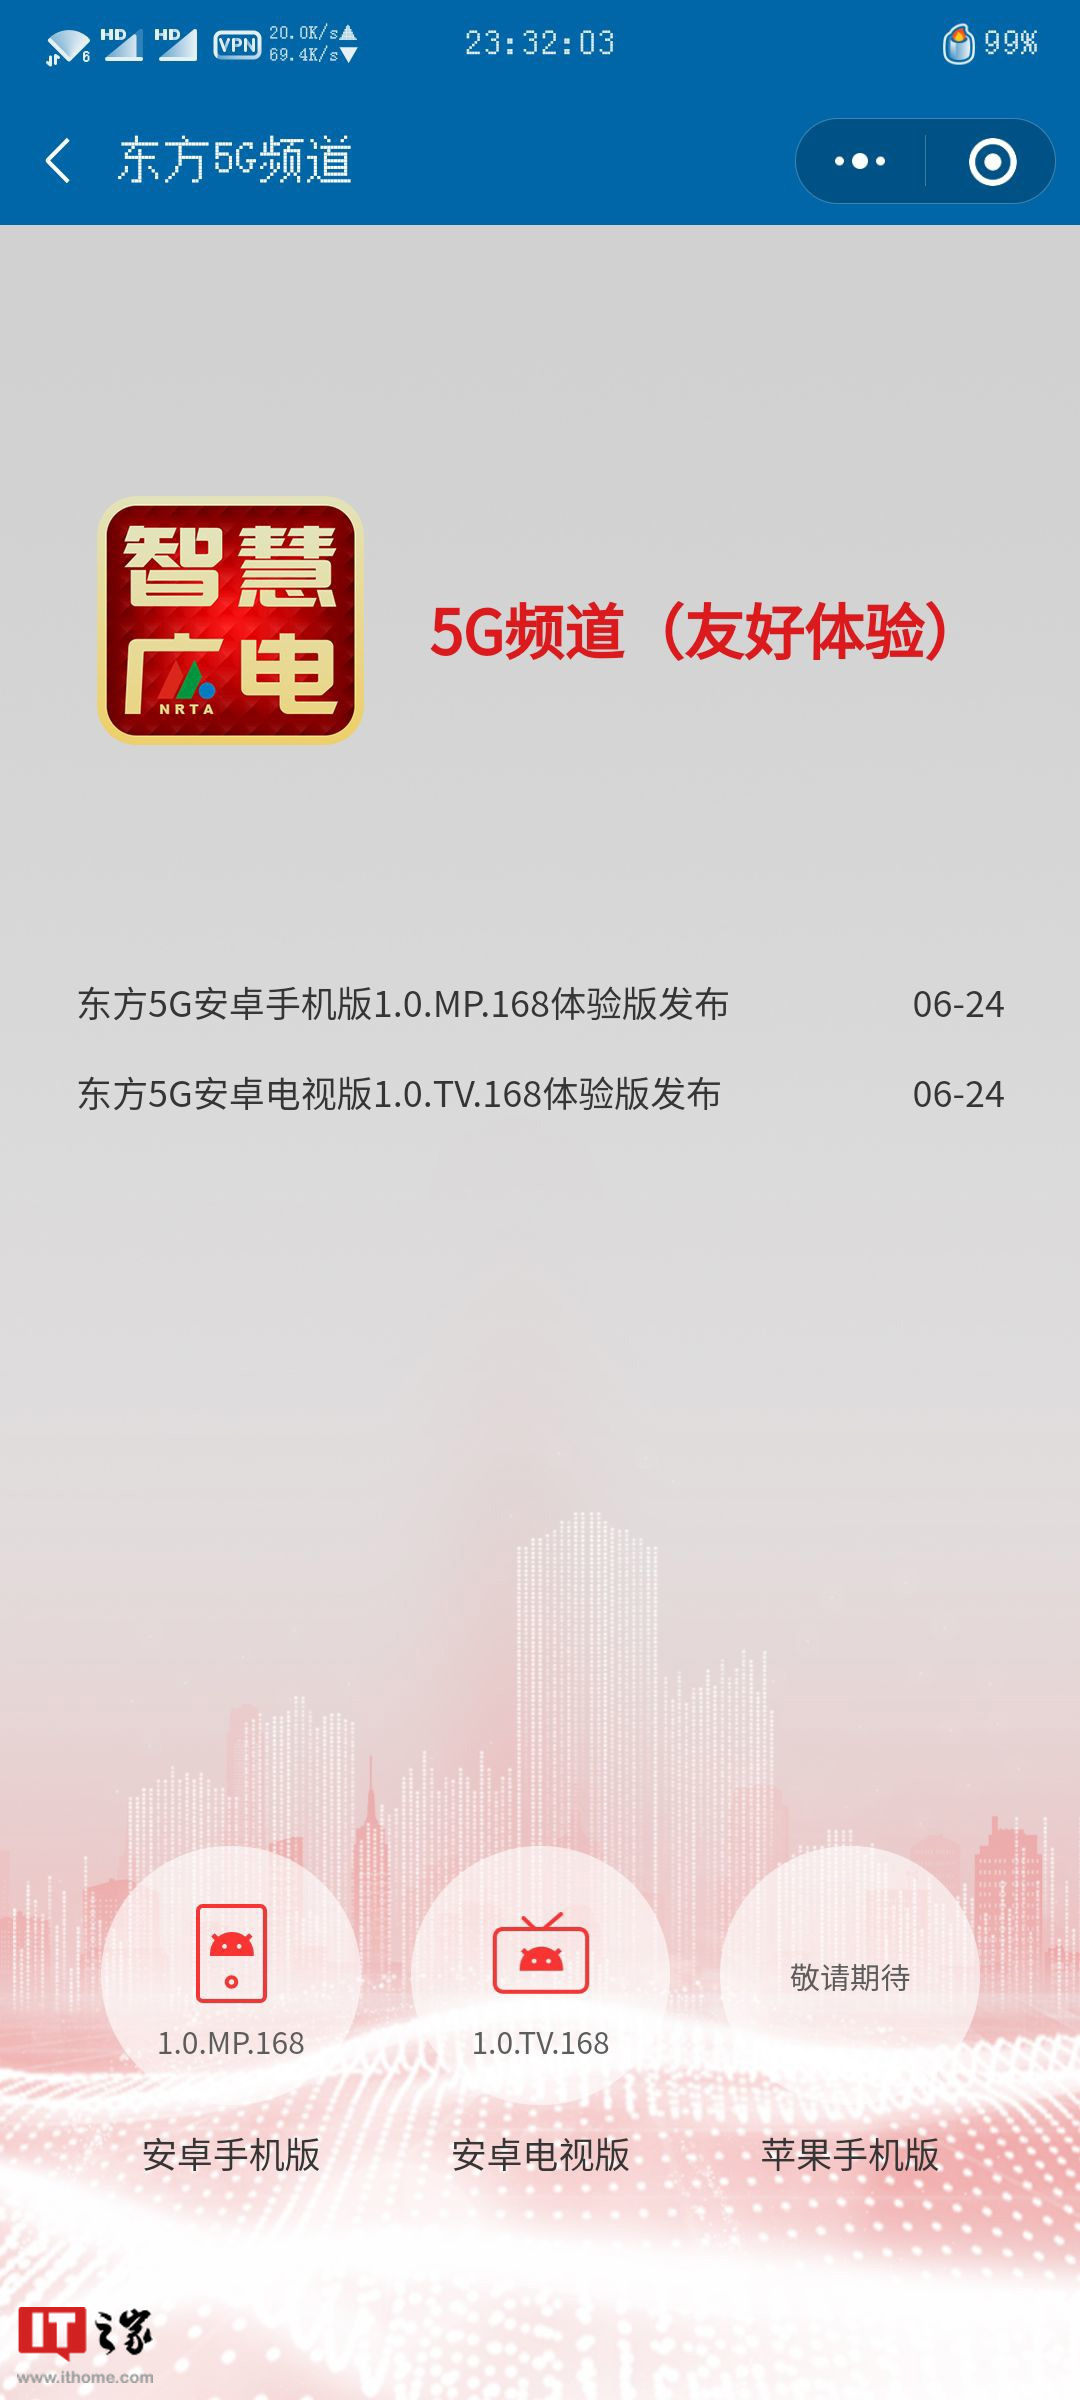 中国广电推出“5G 频道”体验版 App，采用“智慧广电”Logo丨中国广电5g频段是多少